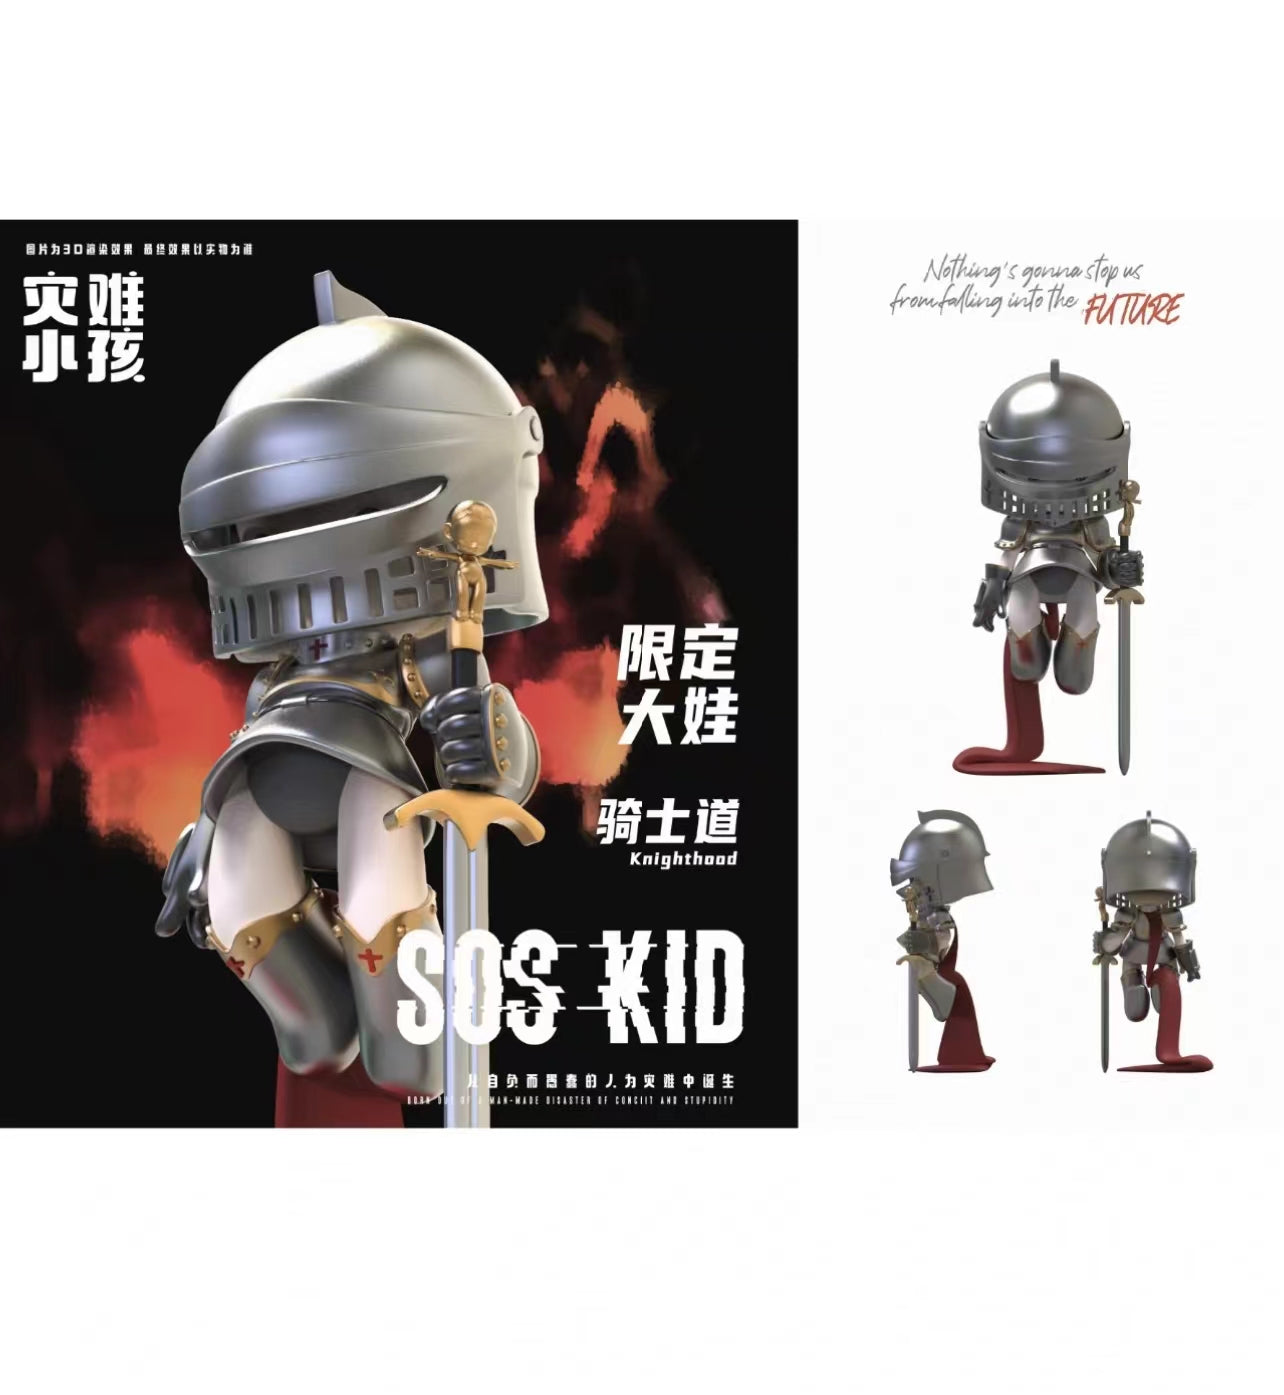 [FUNFORFUN] SOS KID - Limited Art Toy